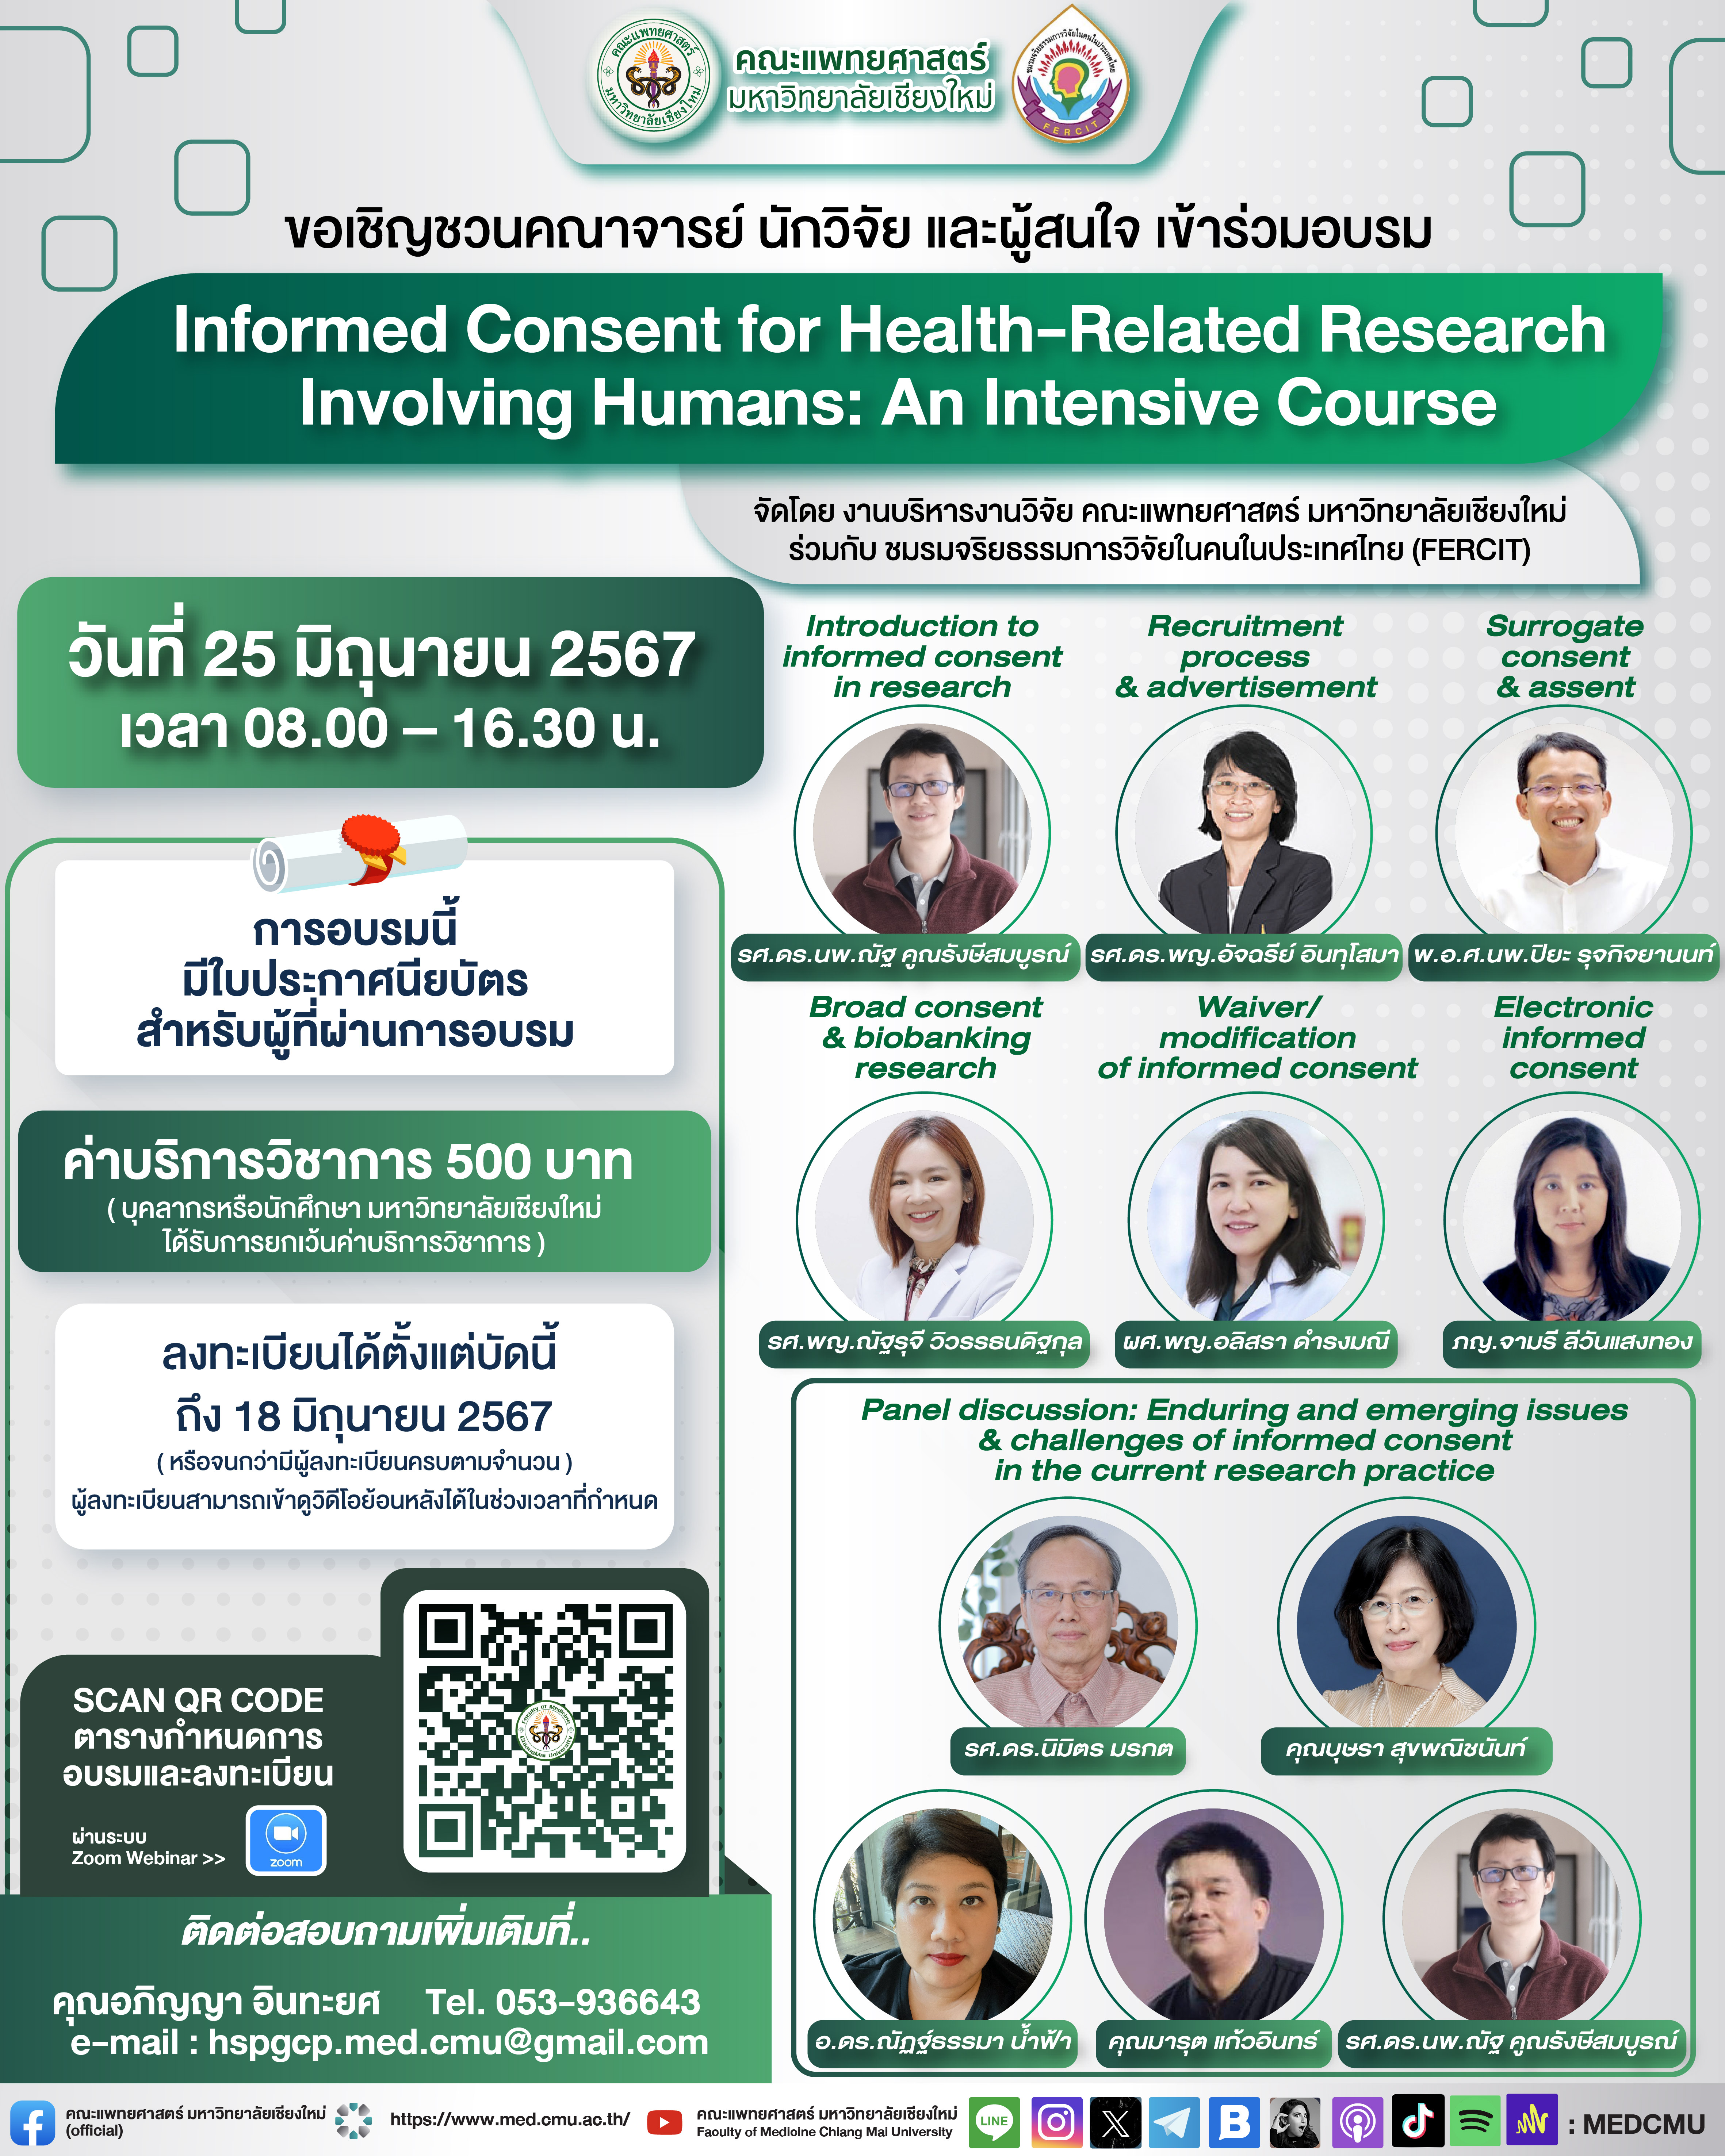 ประชาสัมพันธ์โครงการบริการทางวิชาการอบรมออนไลน์เรื่อง Informed Consent for Health-Related Research Involving Humans: An Intensive Course 25 มิ.ย. 2567